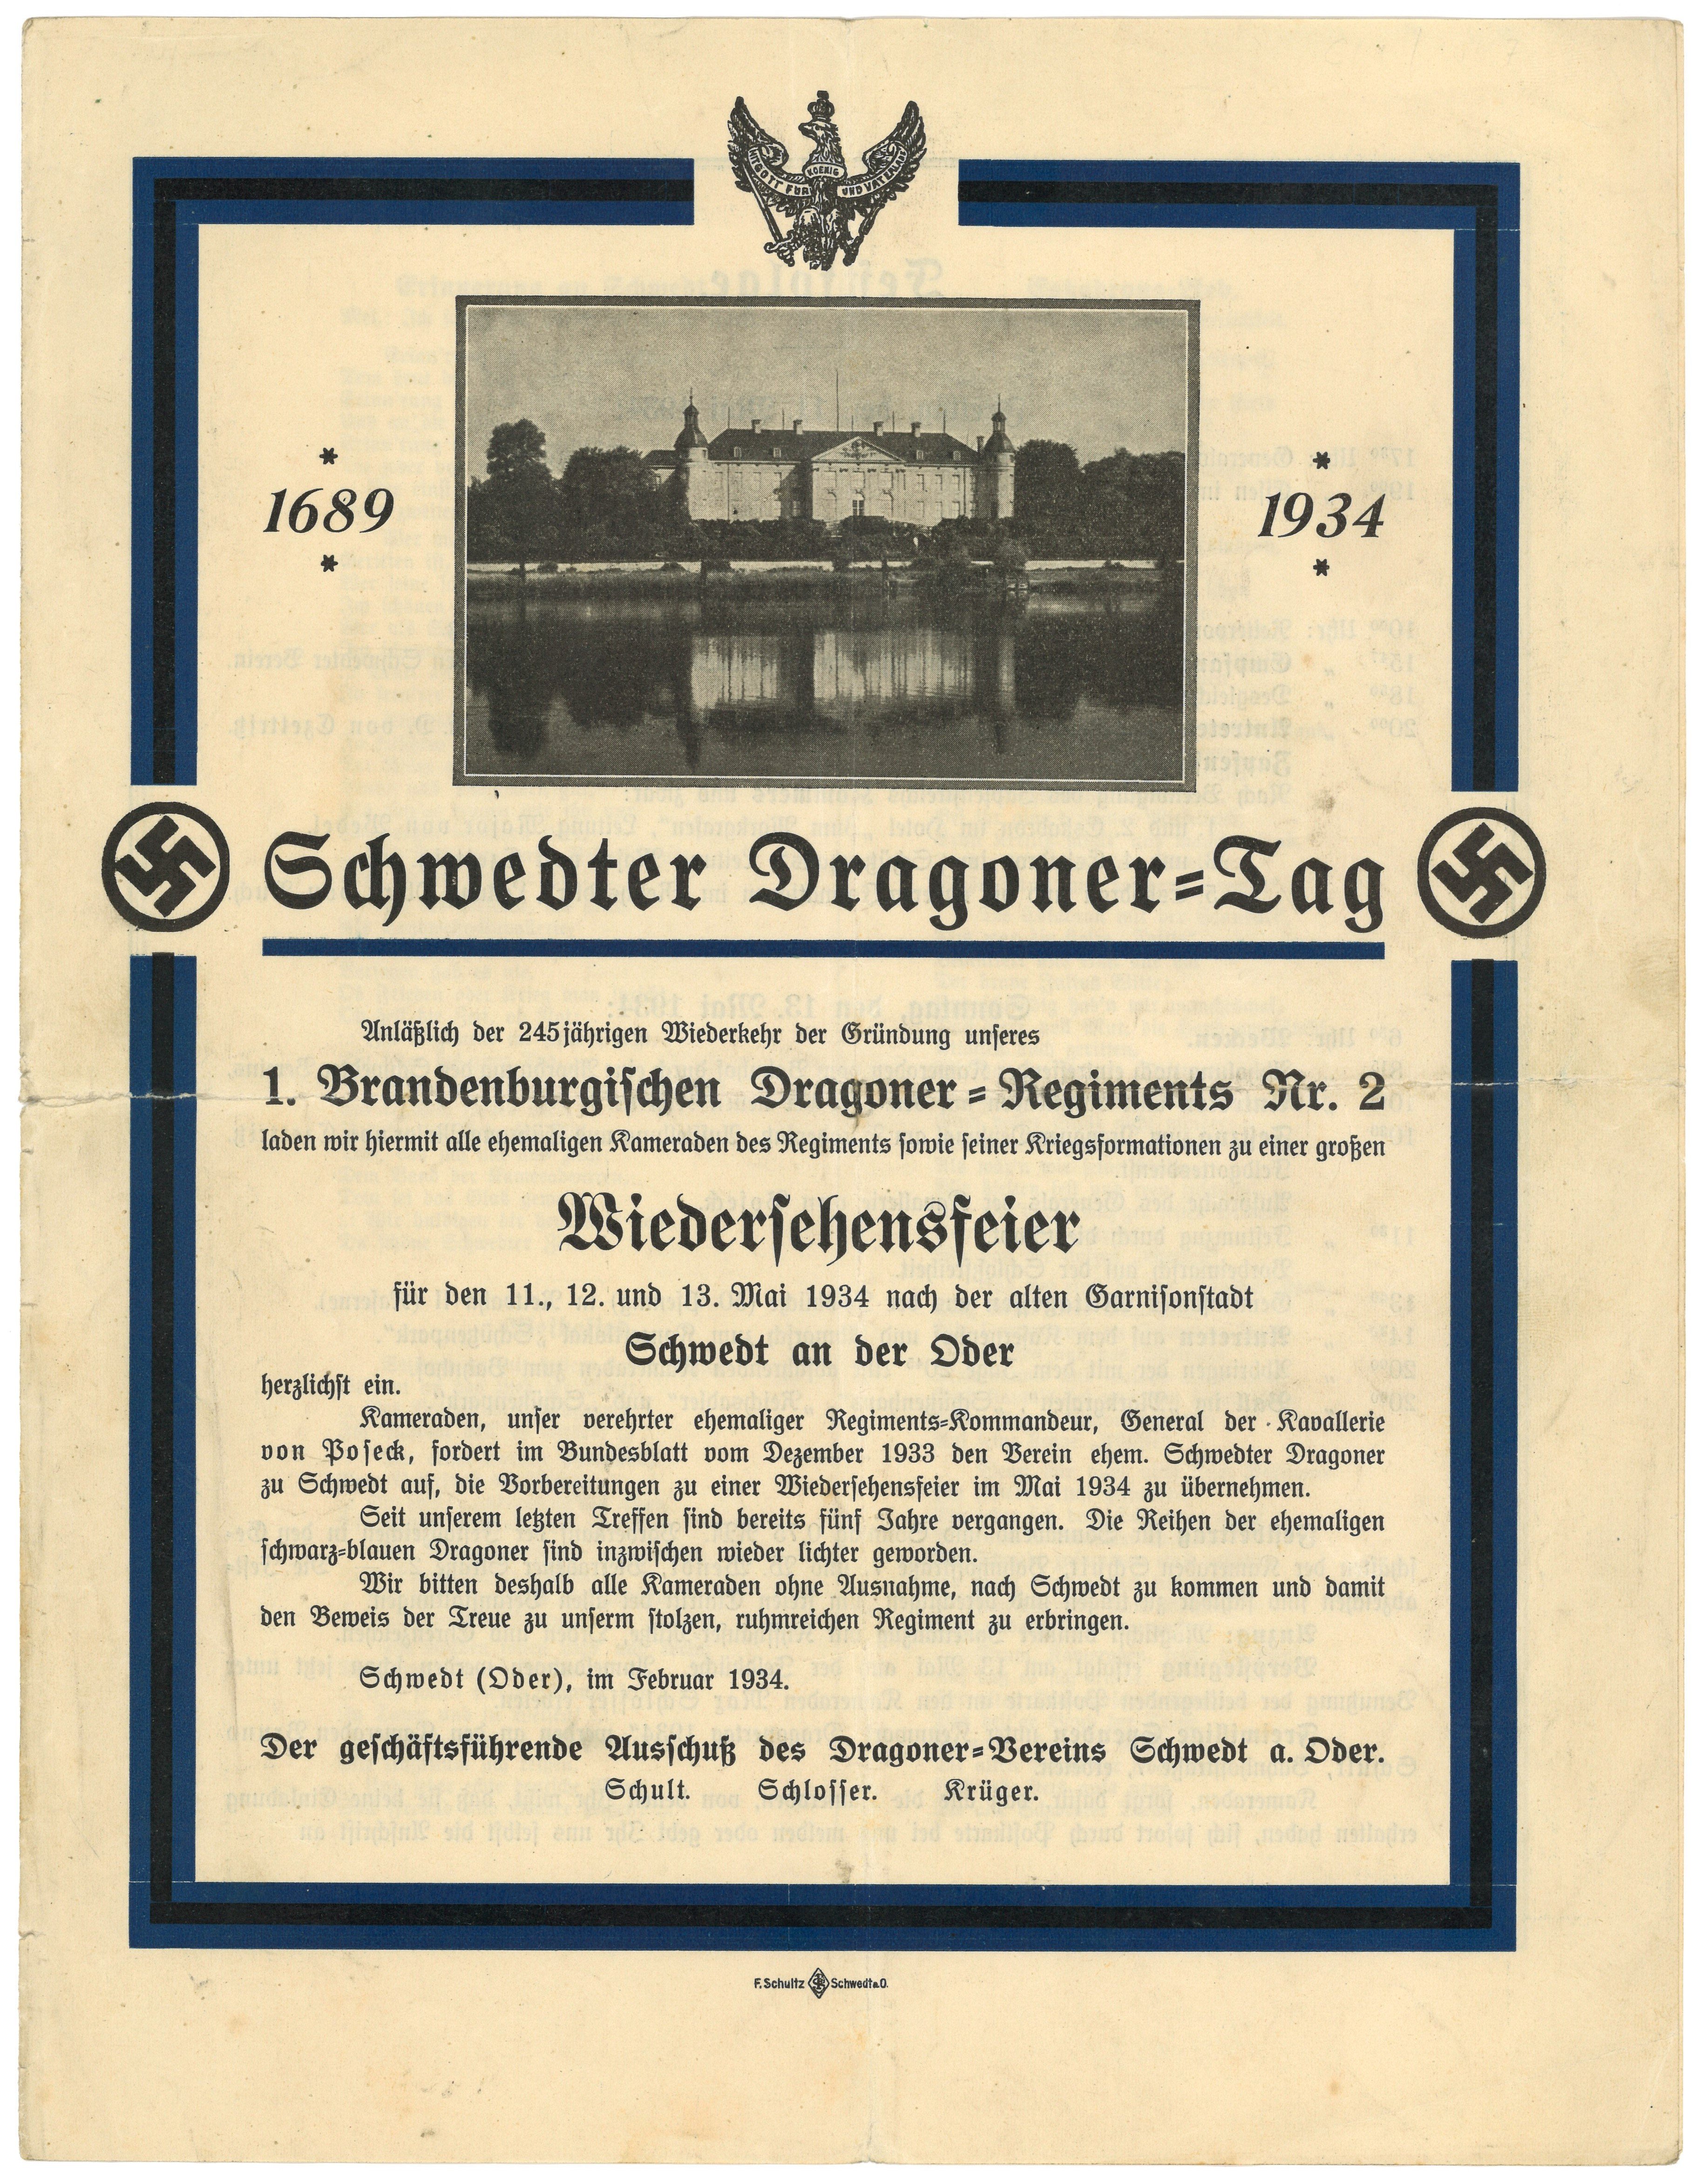 Einladung und Programm zum Schwedter Dragoner-Tag 1934 (Landesgeschichtliche Vereinigung für die Mark Brandenburg e.V., Archiv CC BY)